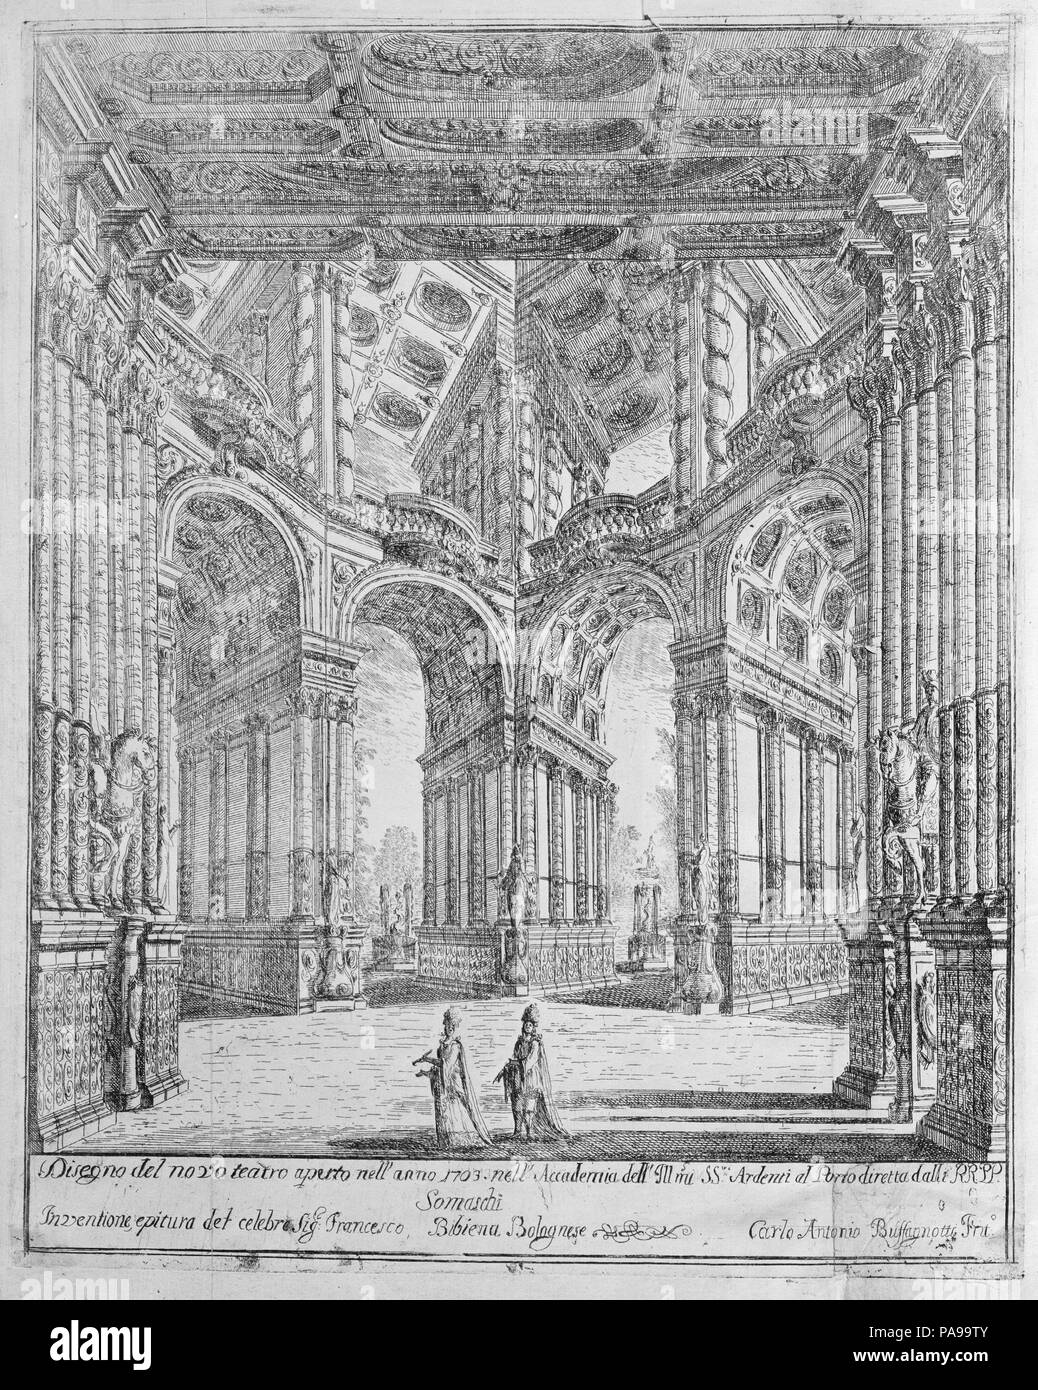 Varie opere di Prospettive. Designer: Ferdinando Galli Bibiena (Italian, Bologna 1657-1743 Bologna). Dimensions: 13 1/8 x 17 x 1 9/16 in. (33.4 x 43.2 x 4 cm)  Box: 18 3/16 x 14 3/16 x 2 9/16 in. (46.2 x 36 x 6.5 cm). Draftsman: Drawn and engraved by Pietro Giovanni Abbati (Italian, ca. 1700-1743). Engraver: Carlo Antonio Buffagnotti (Italian, Bologna 1660-after 1710 Ferrara). Printer: Paolo Monti. Published in: Turin. Date: 1703. Museum: Metropolitan Museum of Art, New York, USA. Stock Photo